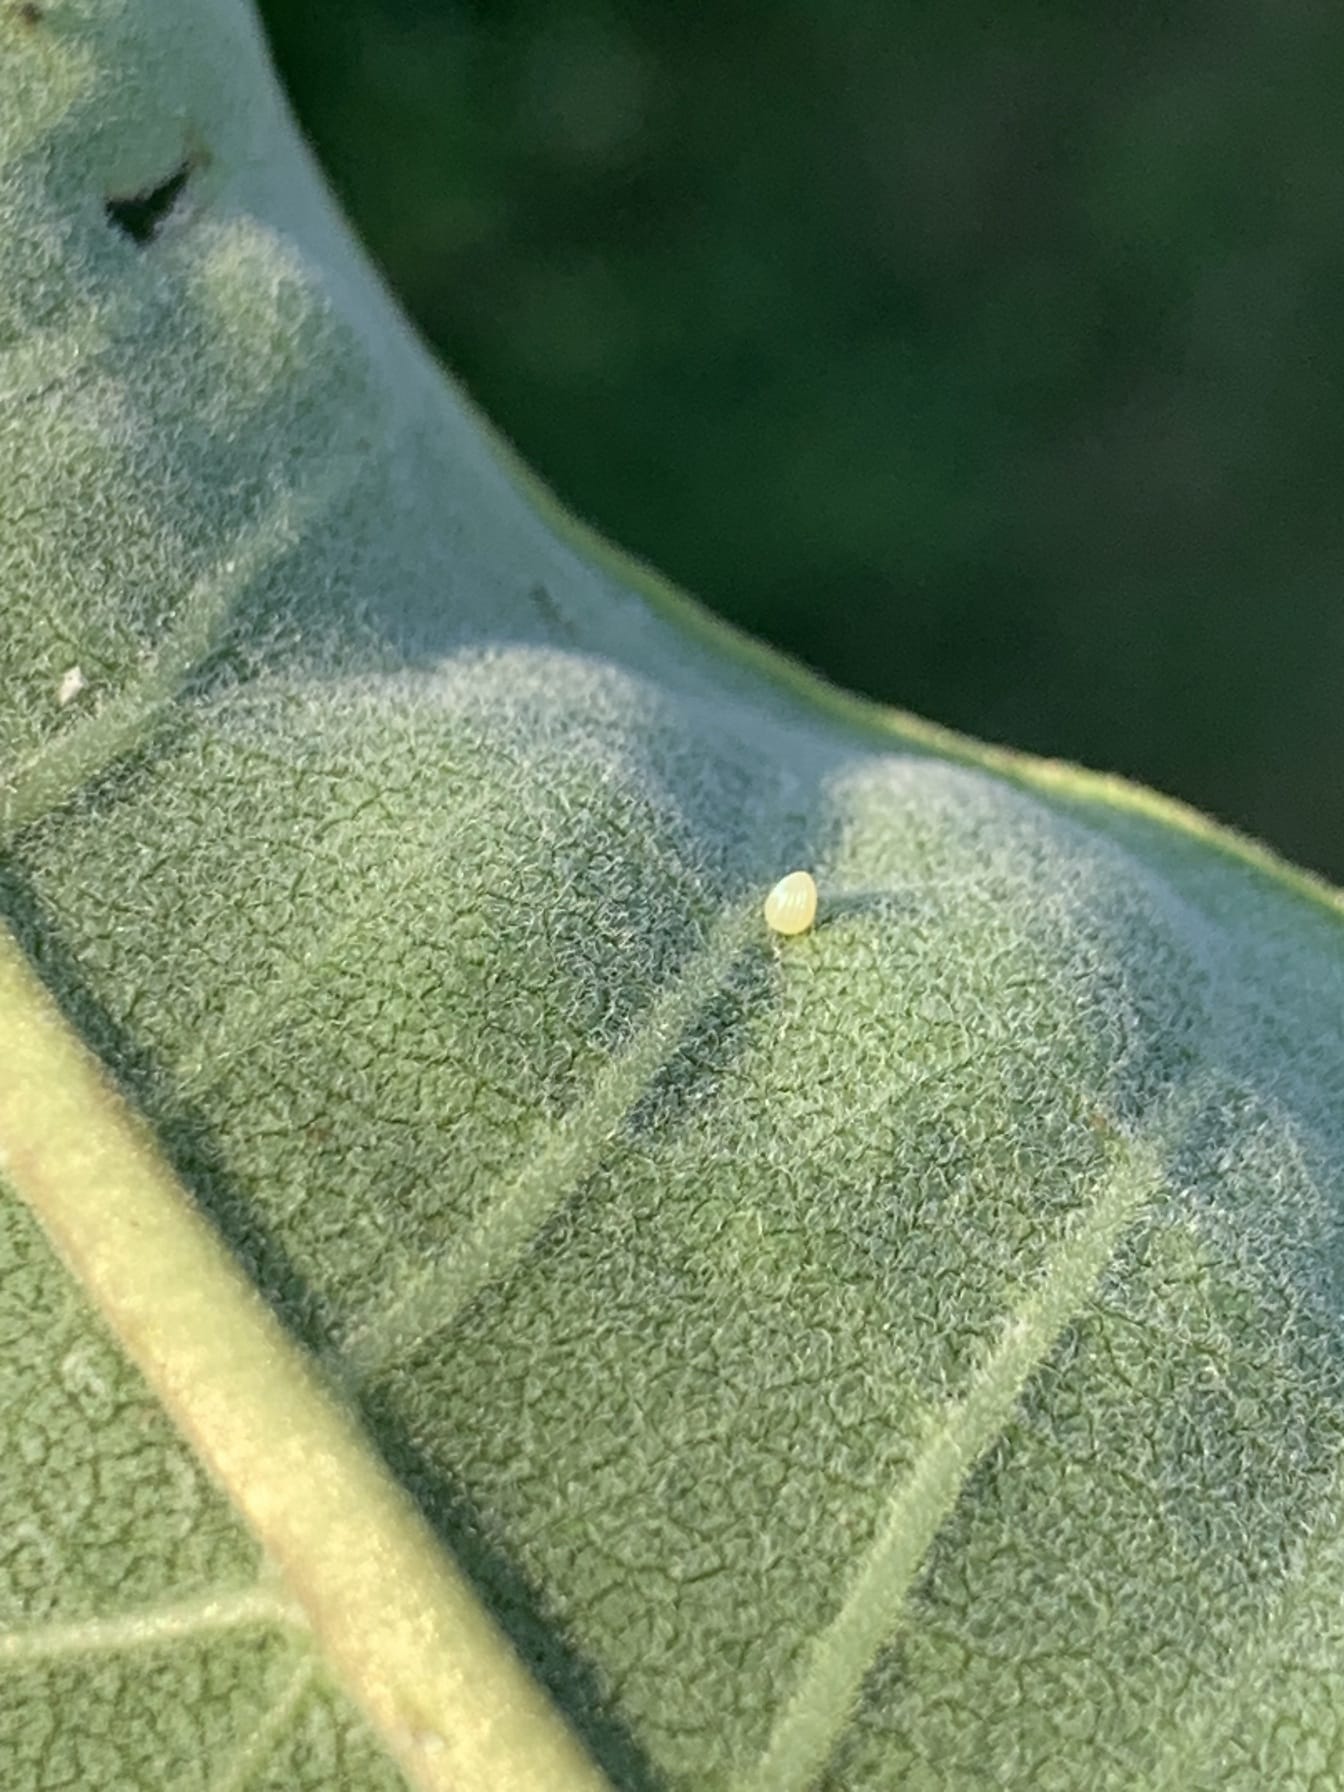 Monark sommerfuglegg på baksiden av milkweed blad veldig liten gul kegleform